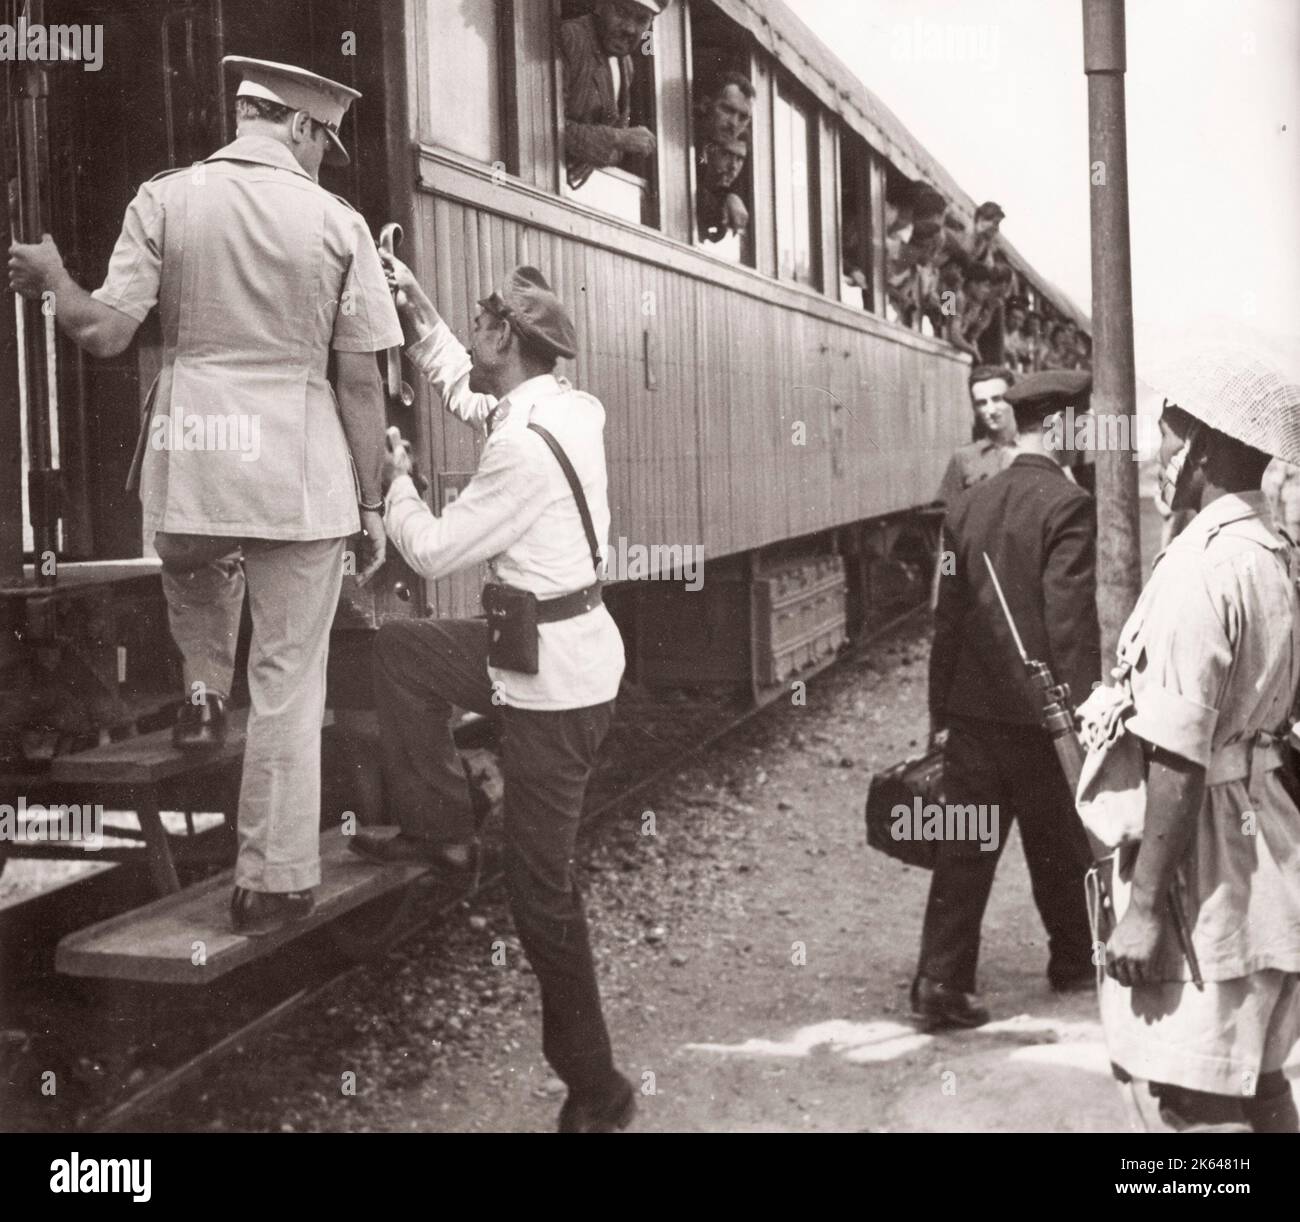 1943 Moyen-Orient Syrie - réfugiés d'Europe sur le train Taurus Express qui a voyagé de Turquie Photographie par un officier de recrutement de l'armée britannique stationnés en Afrique de l'est et au Moyen-Orient pendant la Seconde Guerre mondiale Banque D'Images